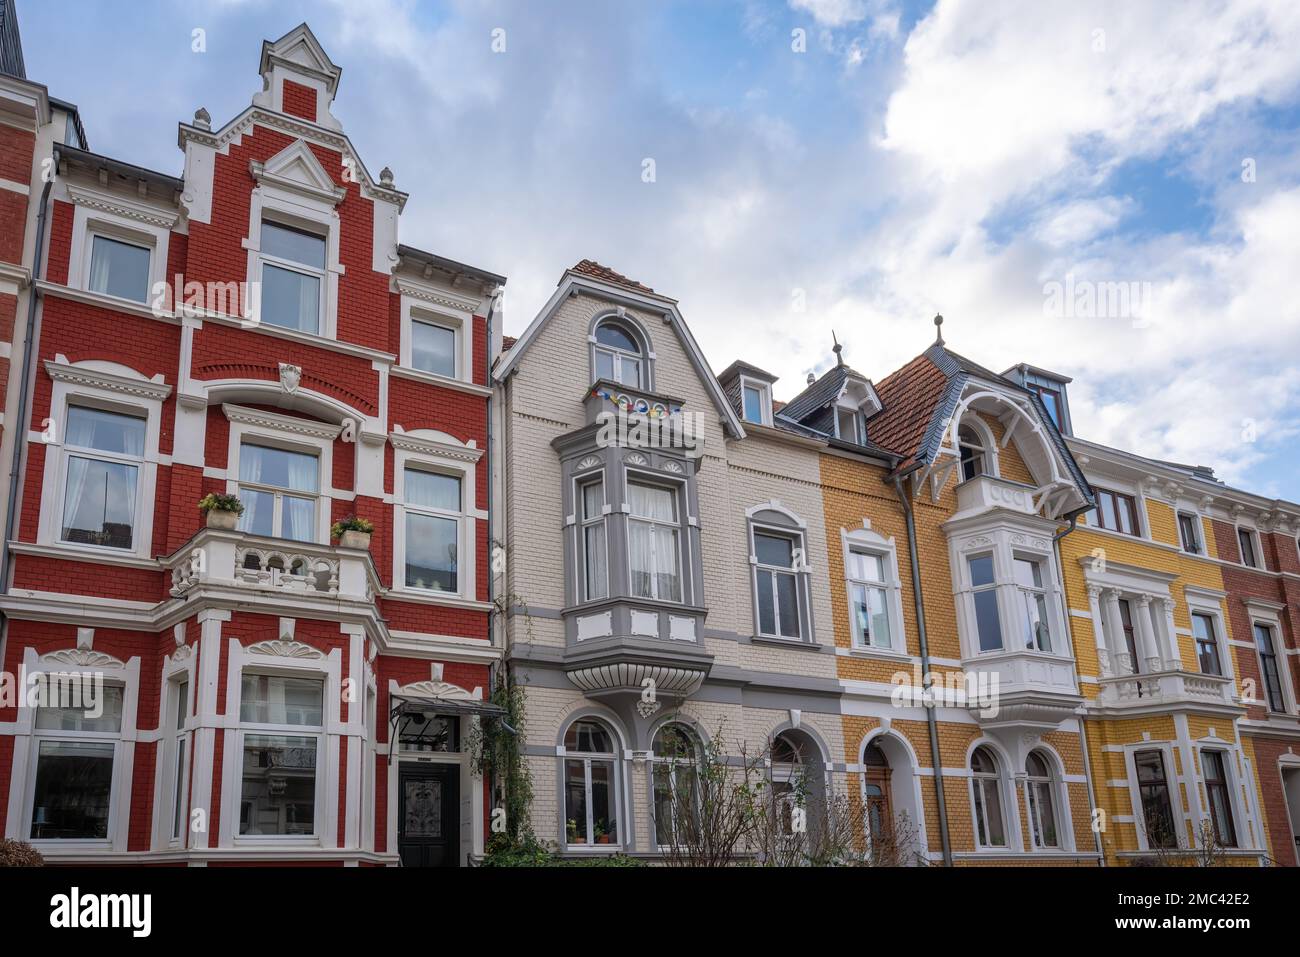 Farbenfrohe Grunderzeit-Häuser im Stadtteil Poppelsdorf - Bonn Stockfoto